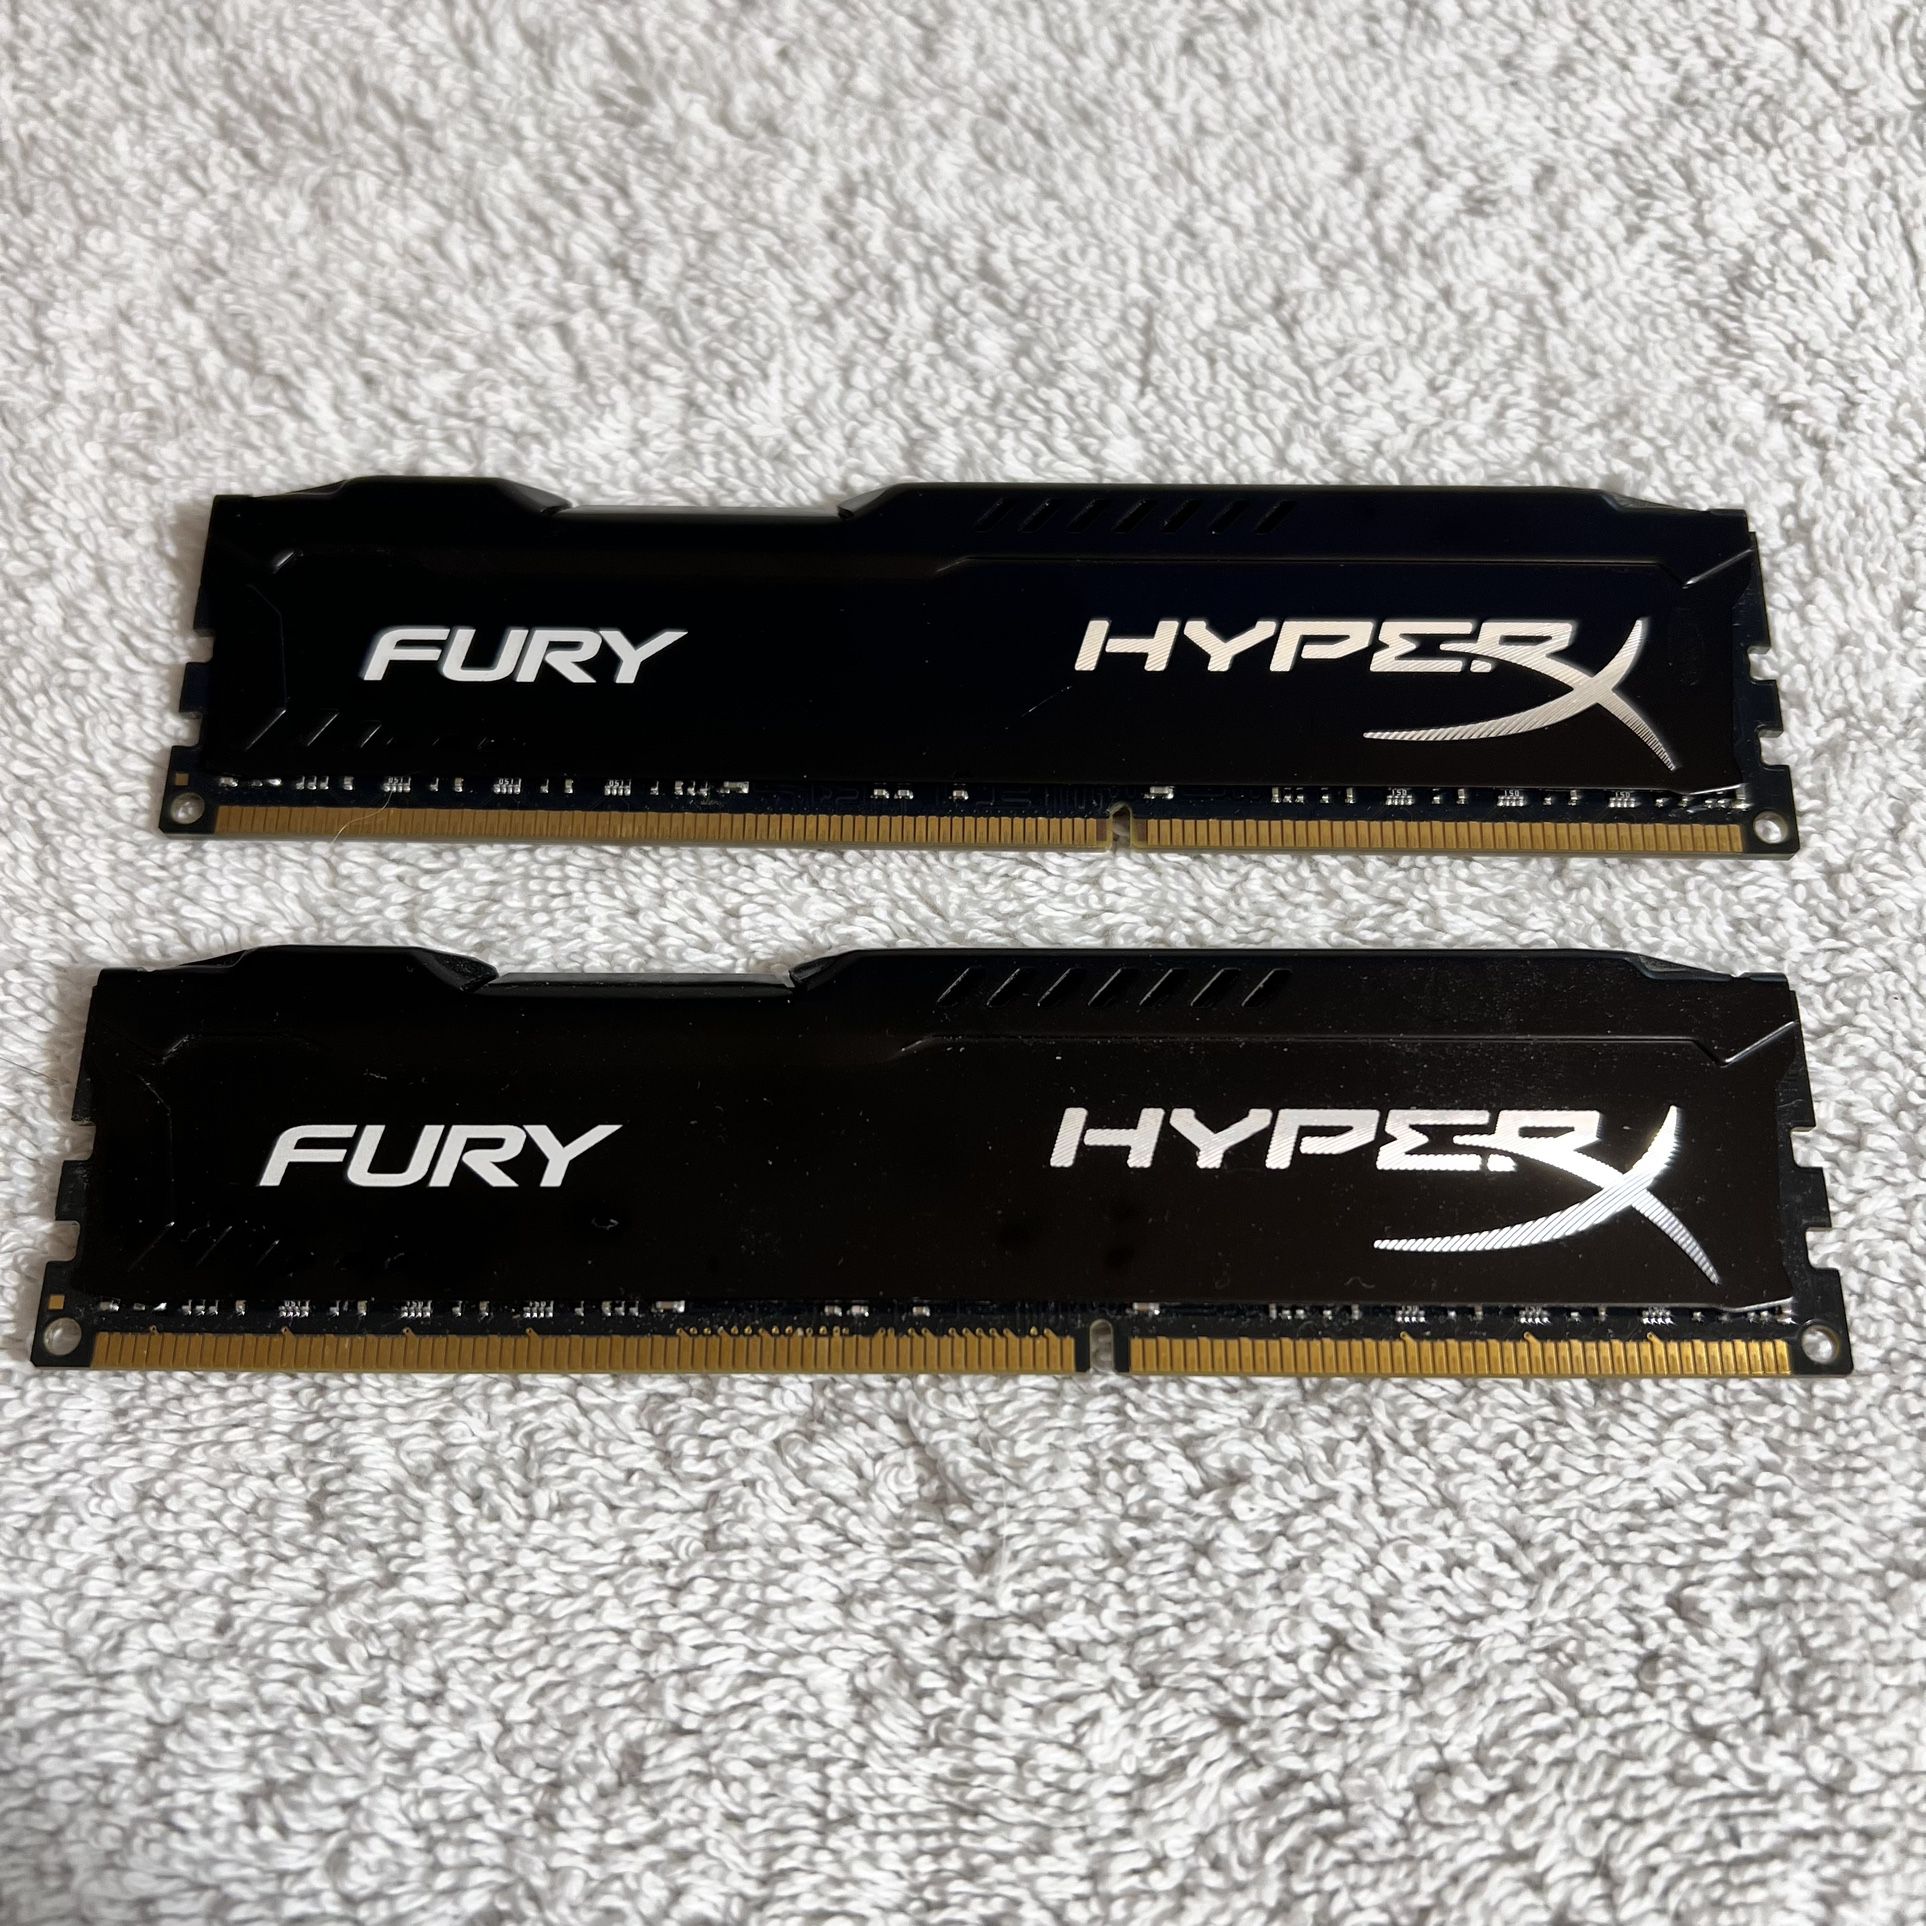 HyperX FURY 16GB (2 x 8GB) DDR3 RAM